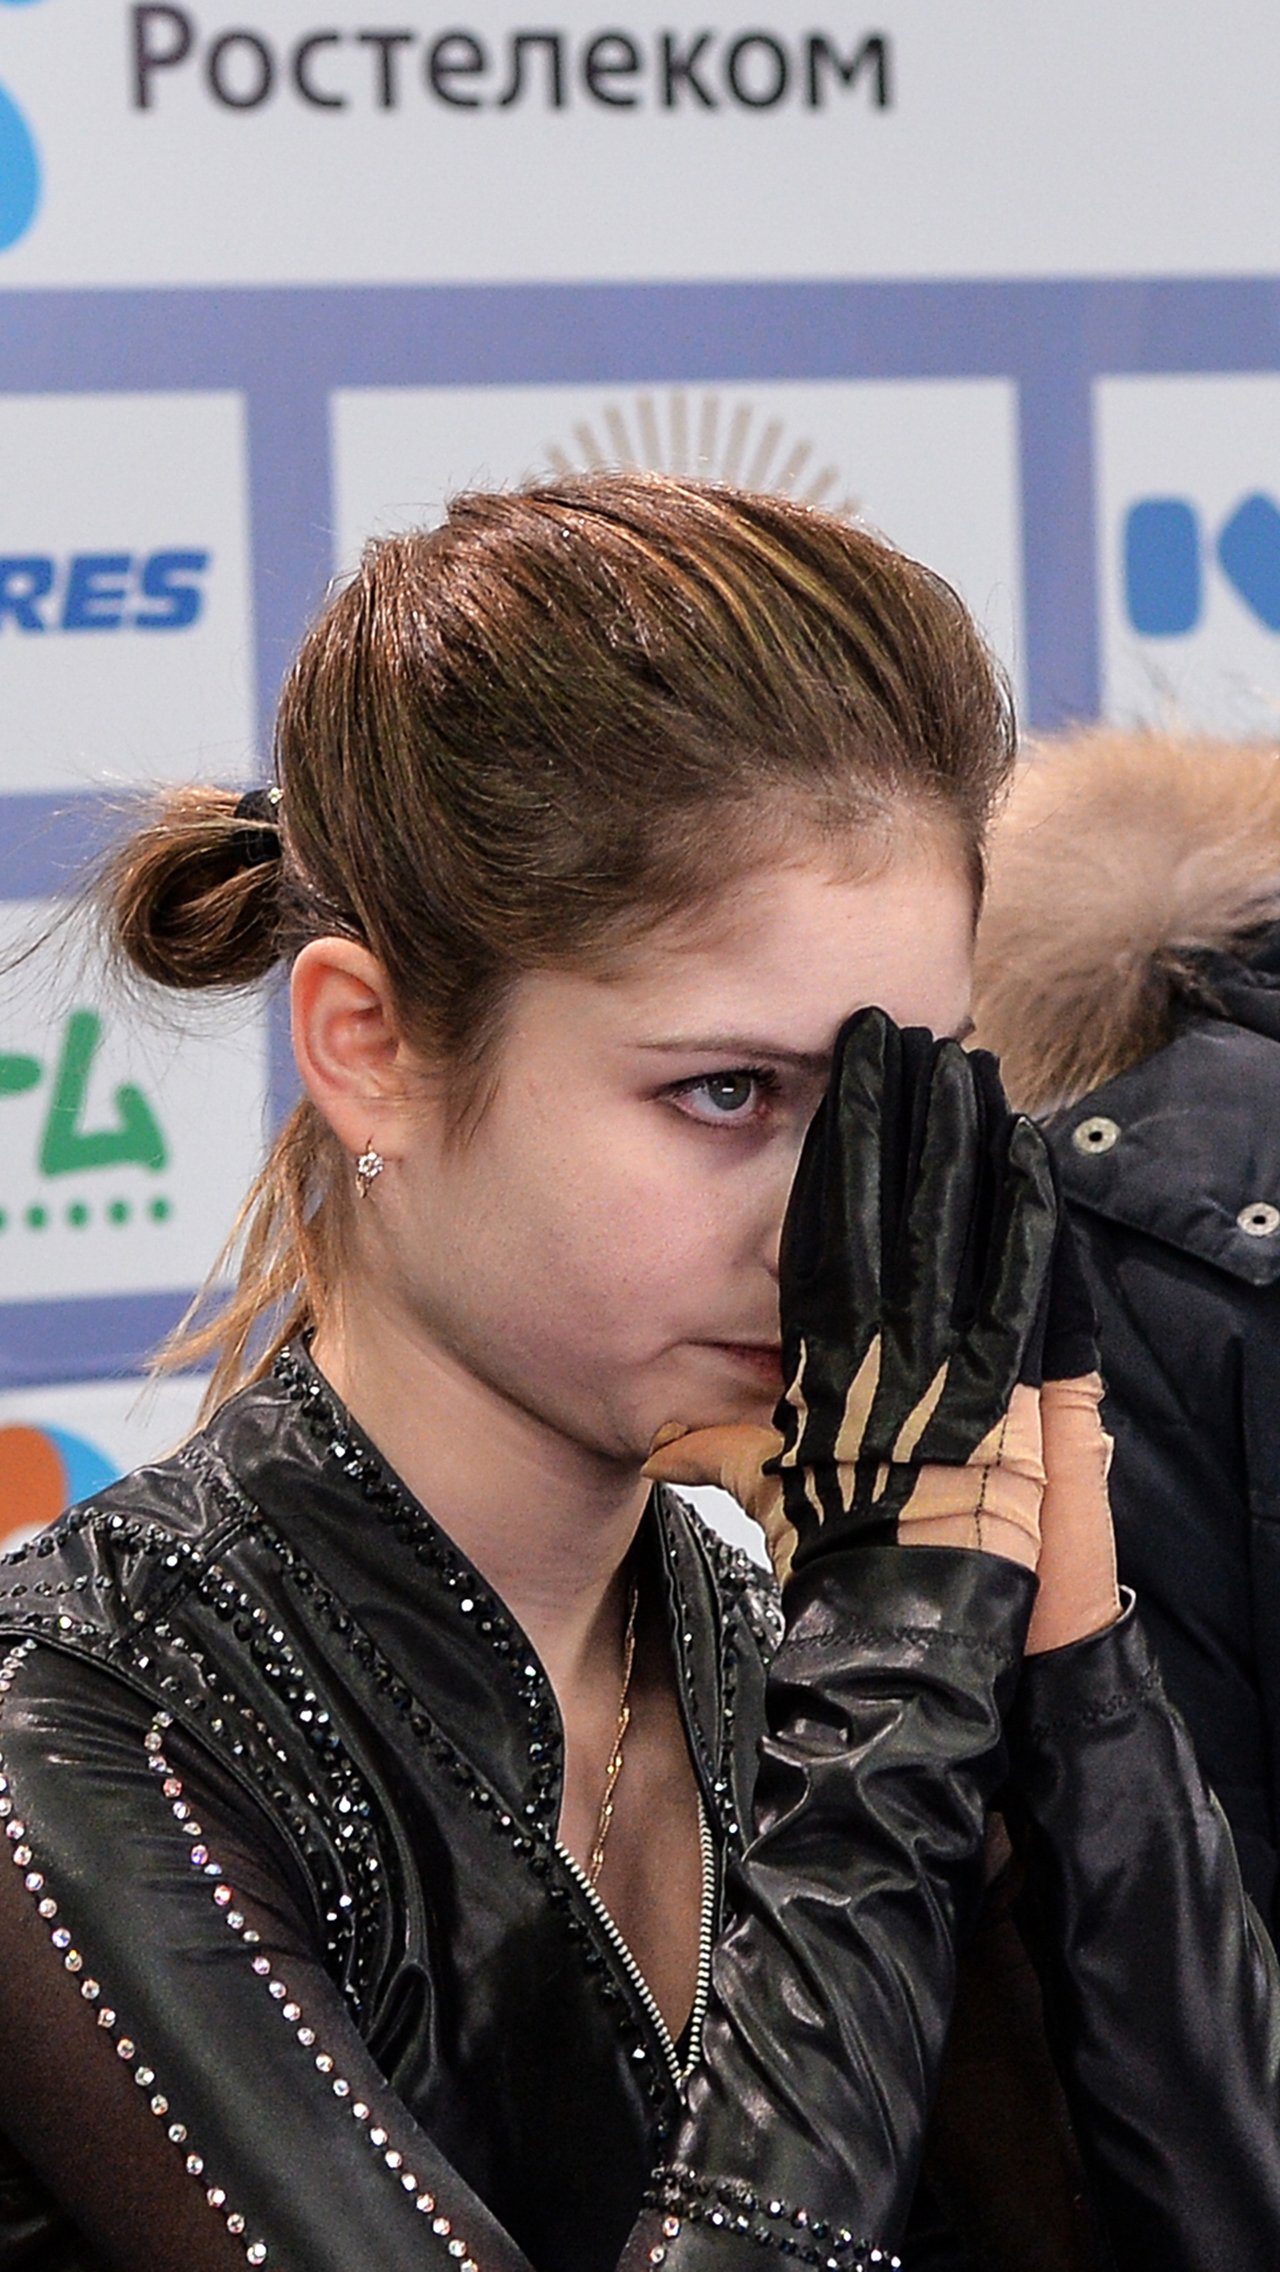 «Чёрная полоса, уходи», — написала Липницкая в «Инстаграме» по окончании турнира.